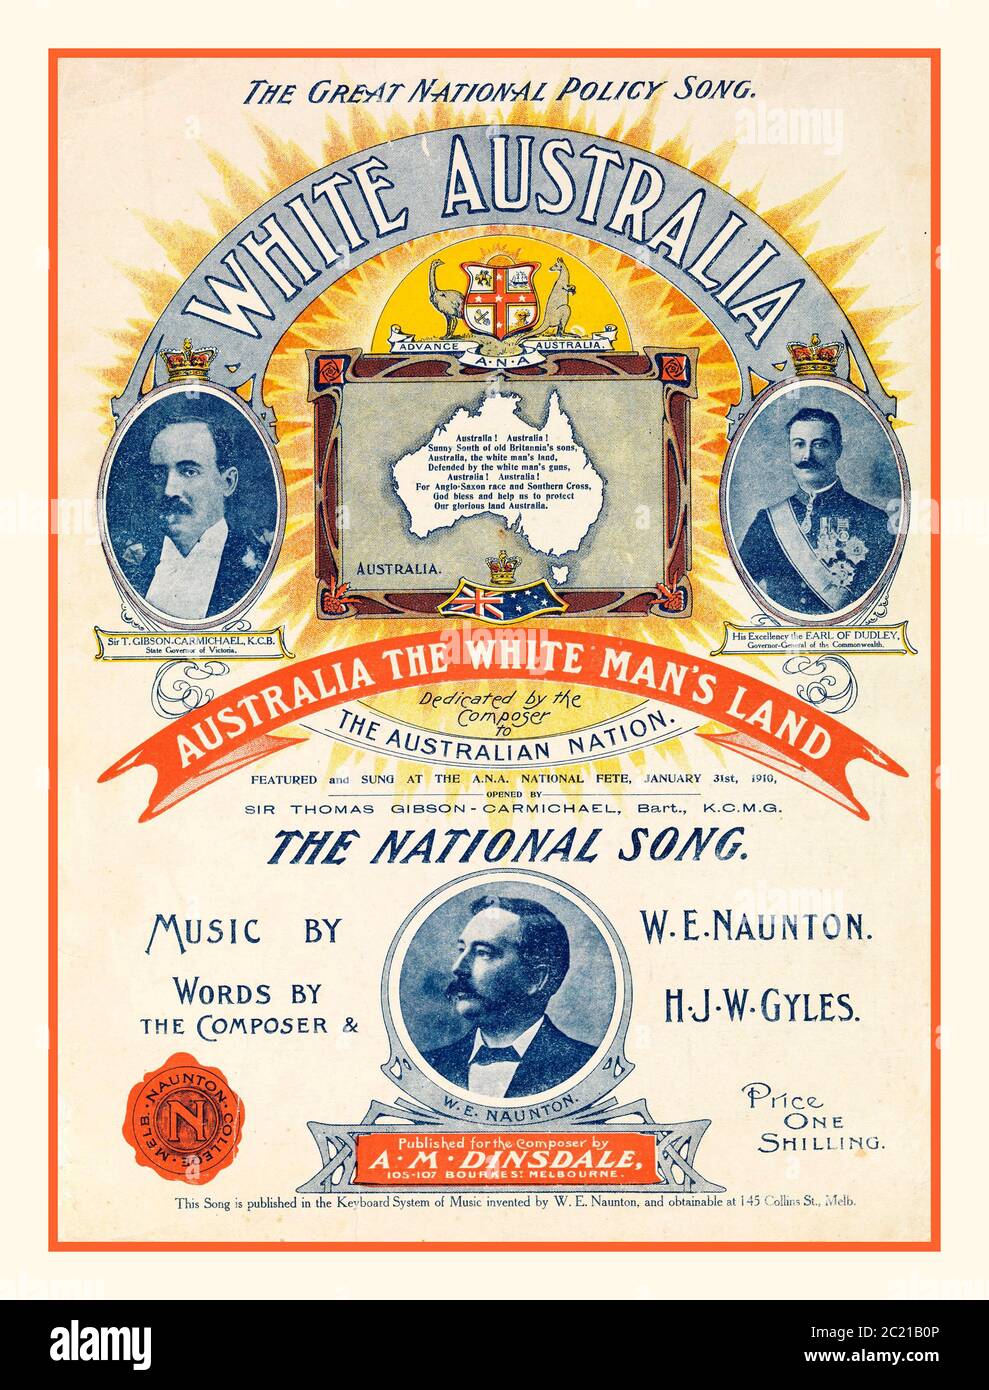 Partituras antiraborígenes racistas Portada (Australia, aproximadamente 1910) Partituras para la canción 'White Australia', compuesta por W.E. Naunton con palabras de Naunton y H.J.W. Gyles, y actuó en el Australian Natives' Association National Fete, 31 de enero de 1910. Los motivos de la partitura incluyen un mapa blanco de Australia. Naunton fue un prolífico compositor que escribió música para muchas canciones relacionadas con el nacionalismo australiano y otros temas. 'Un pueblo, un destino, una nación' - 'una bandera, una lengua, un destino de pueblo. Australia la tierra del hombre blanco, / defendida por las armas del hombre blanco Foto de stock